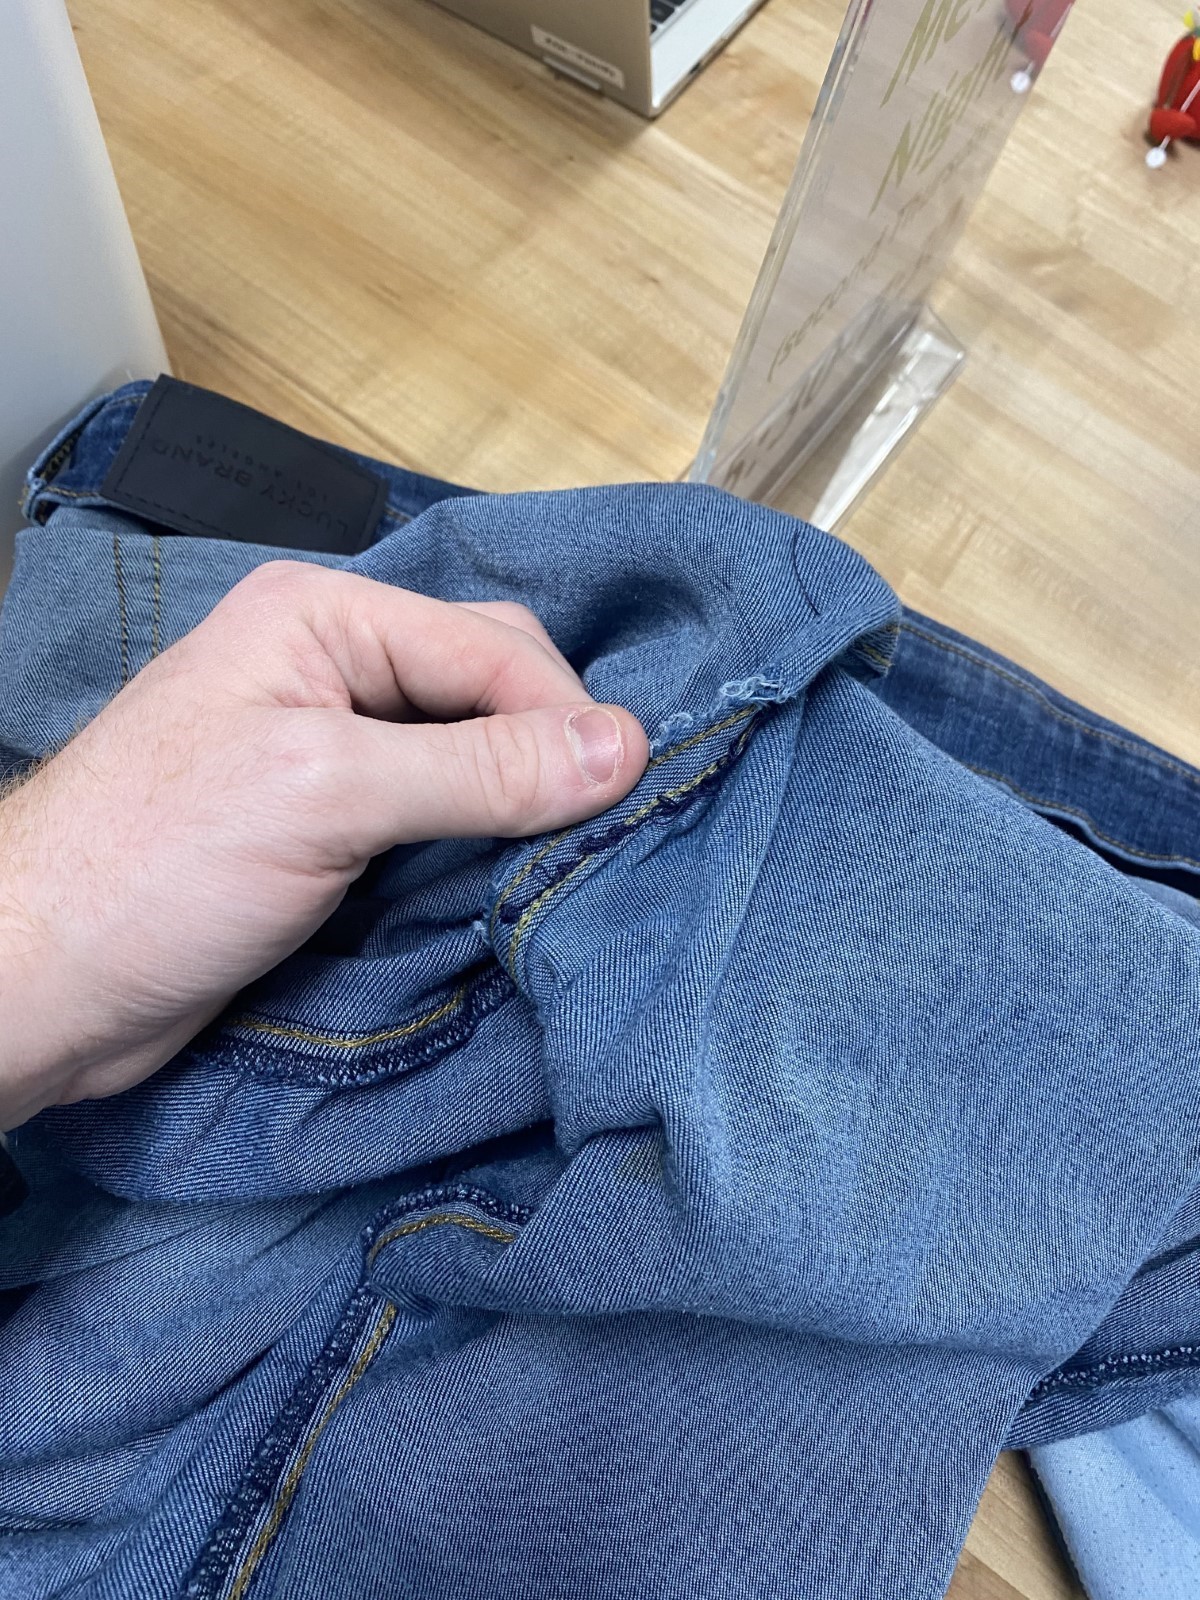 interior center seam of denim jeans